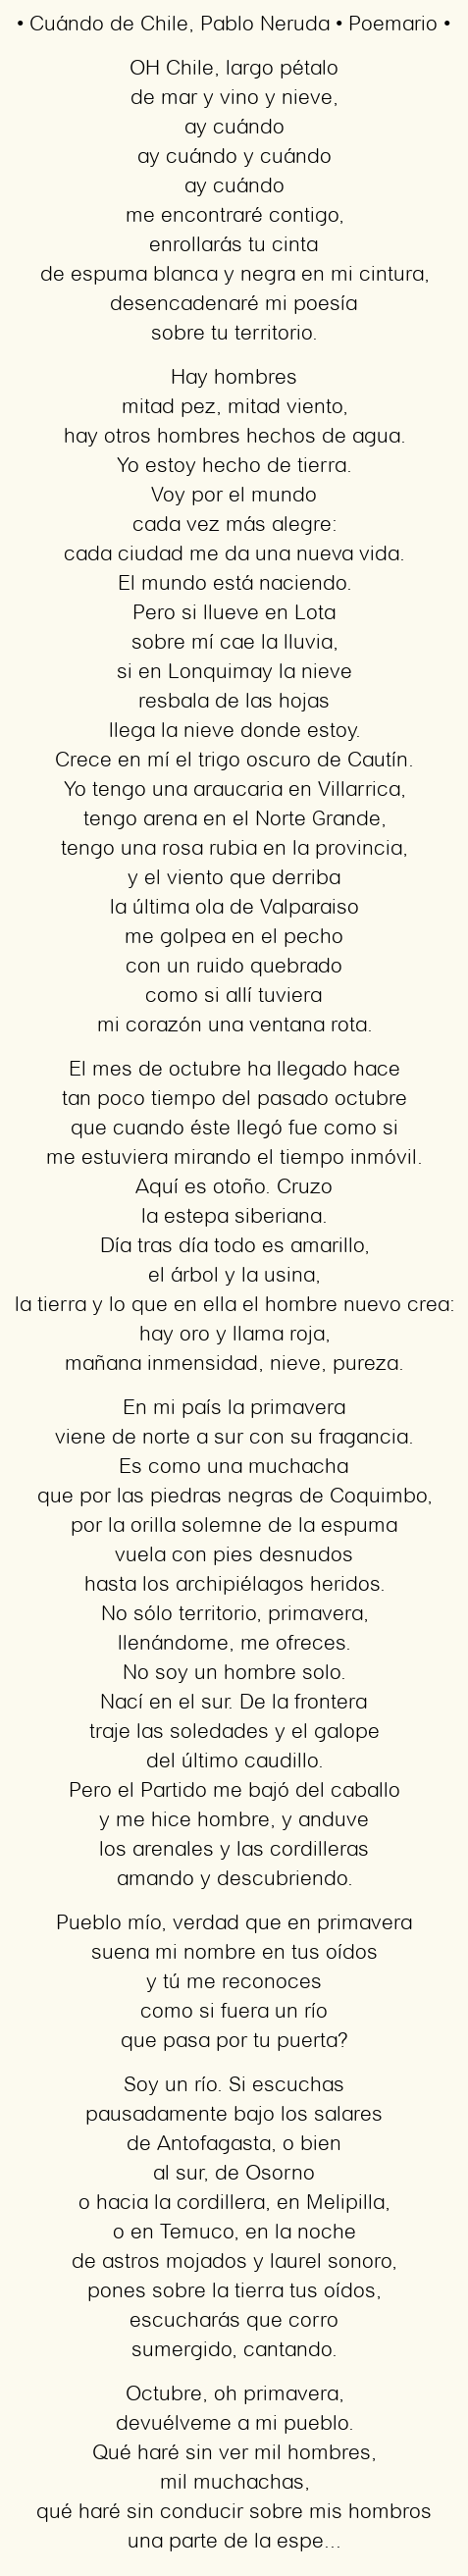 Imagen con el poema Cuándo de Chile, por Pablo Neruda